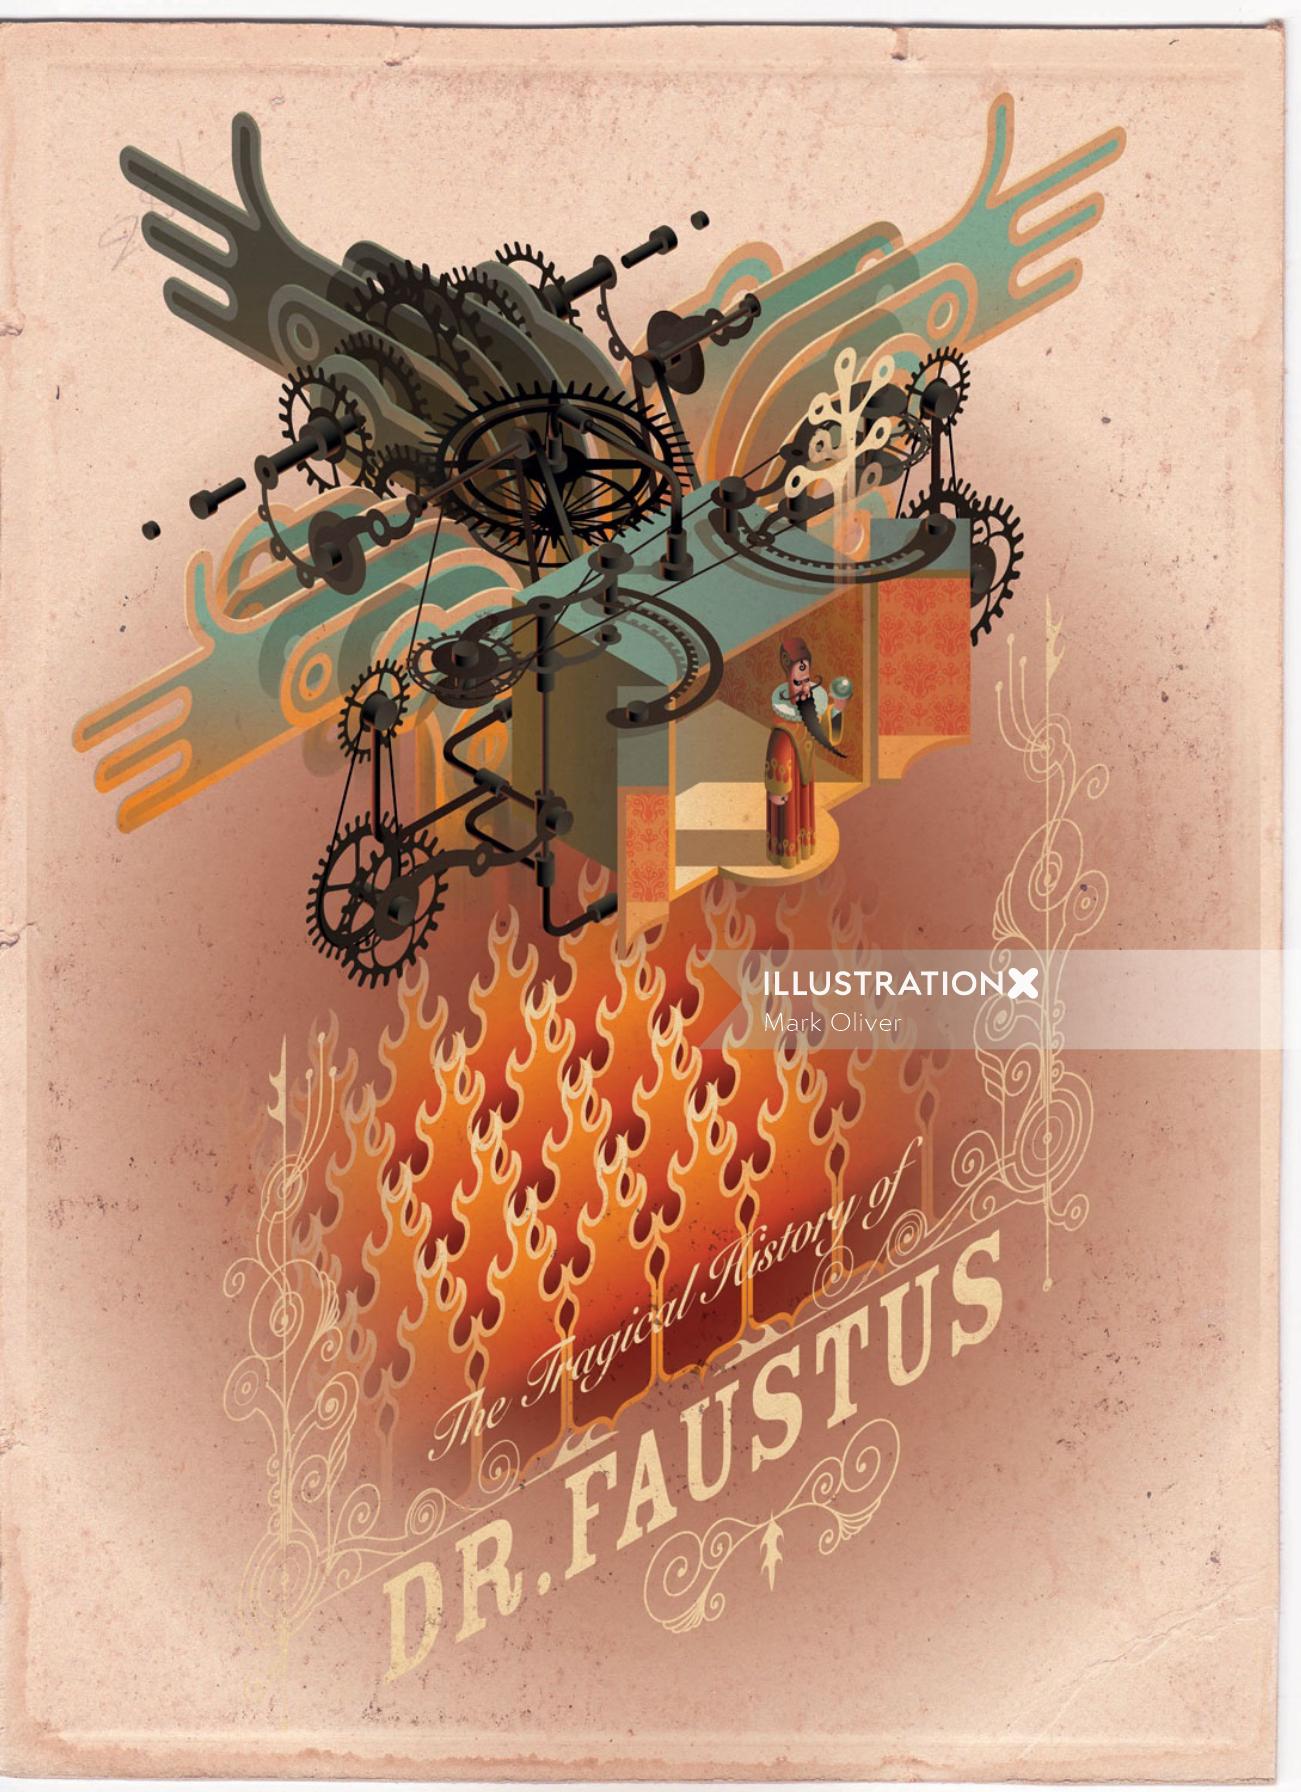 Faustus博士技术艺术